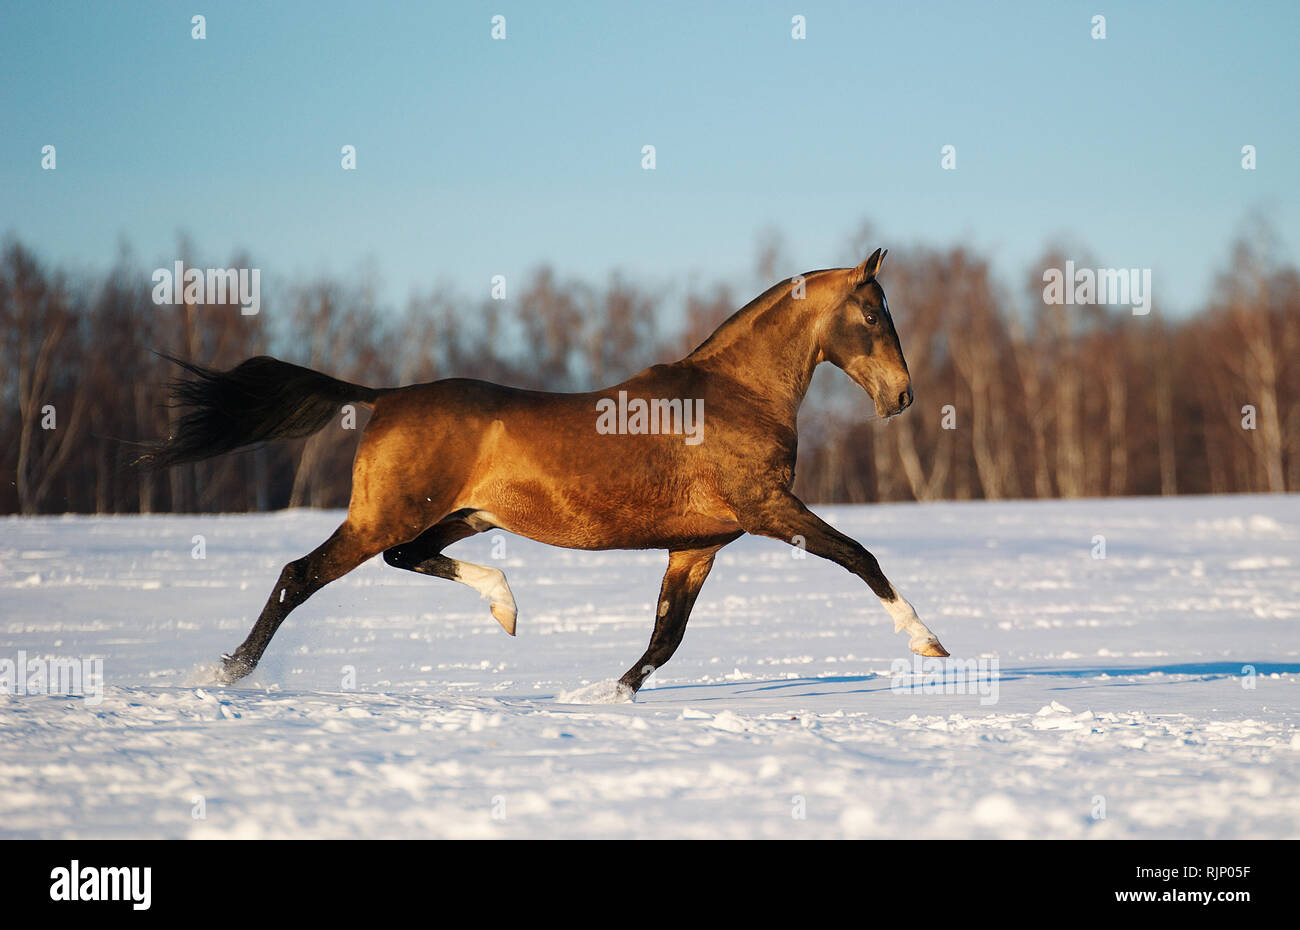 Akhal teke stallion runs in trot sideways over the snowy field in winter. Stock Photo